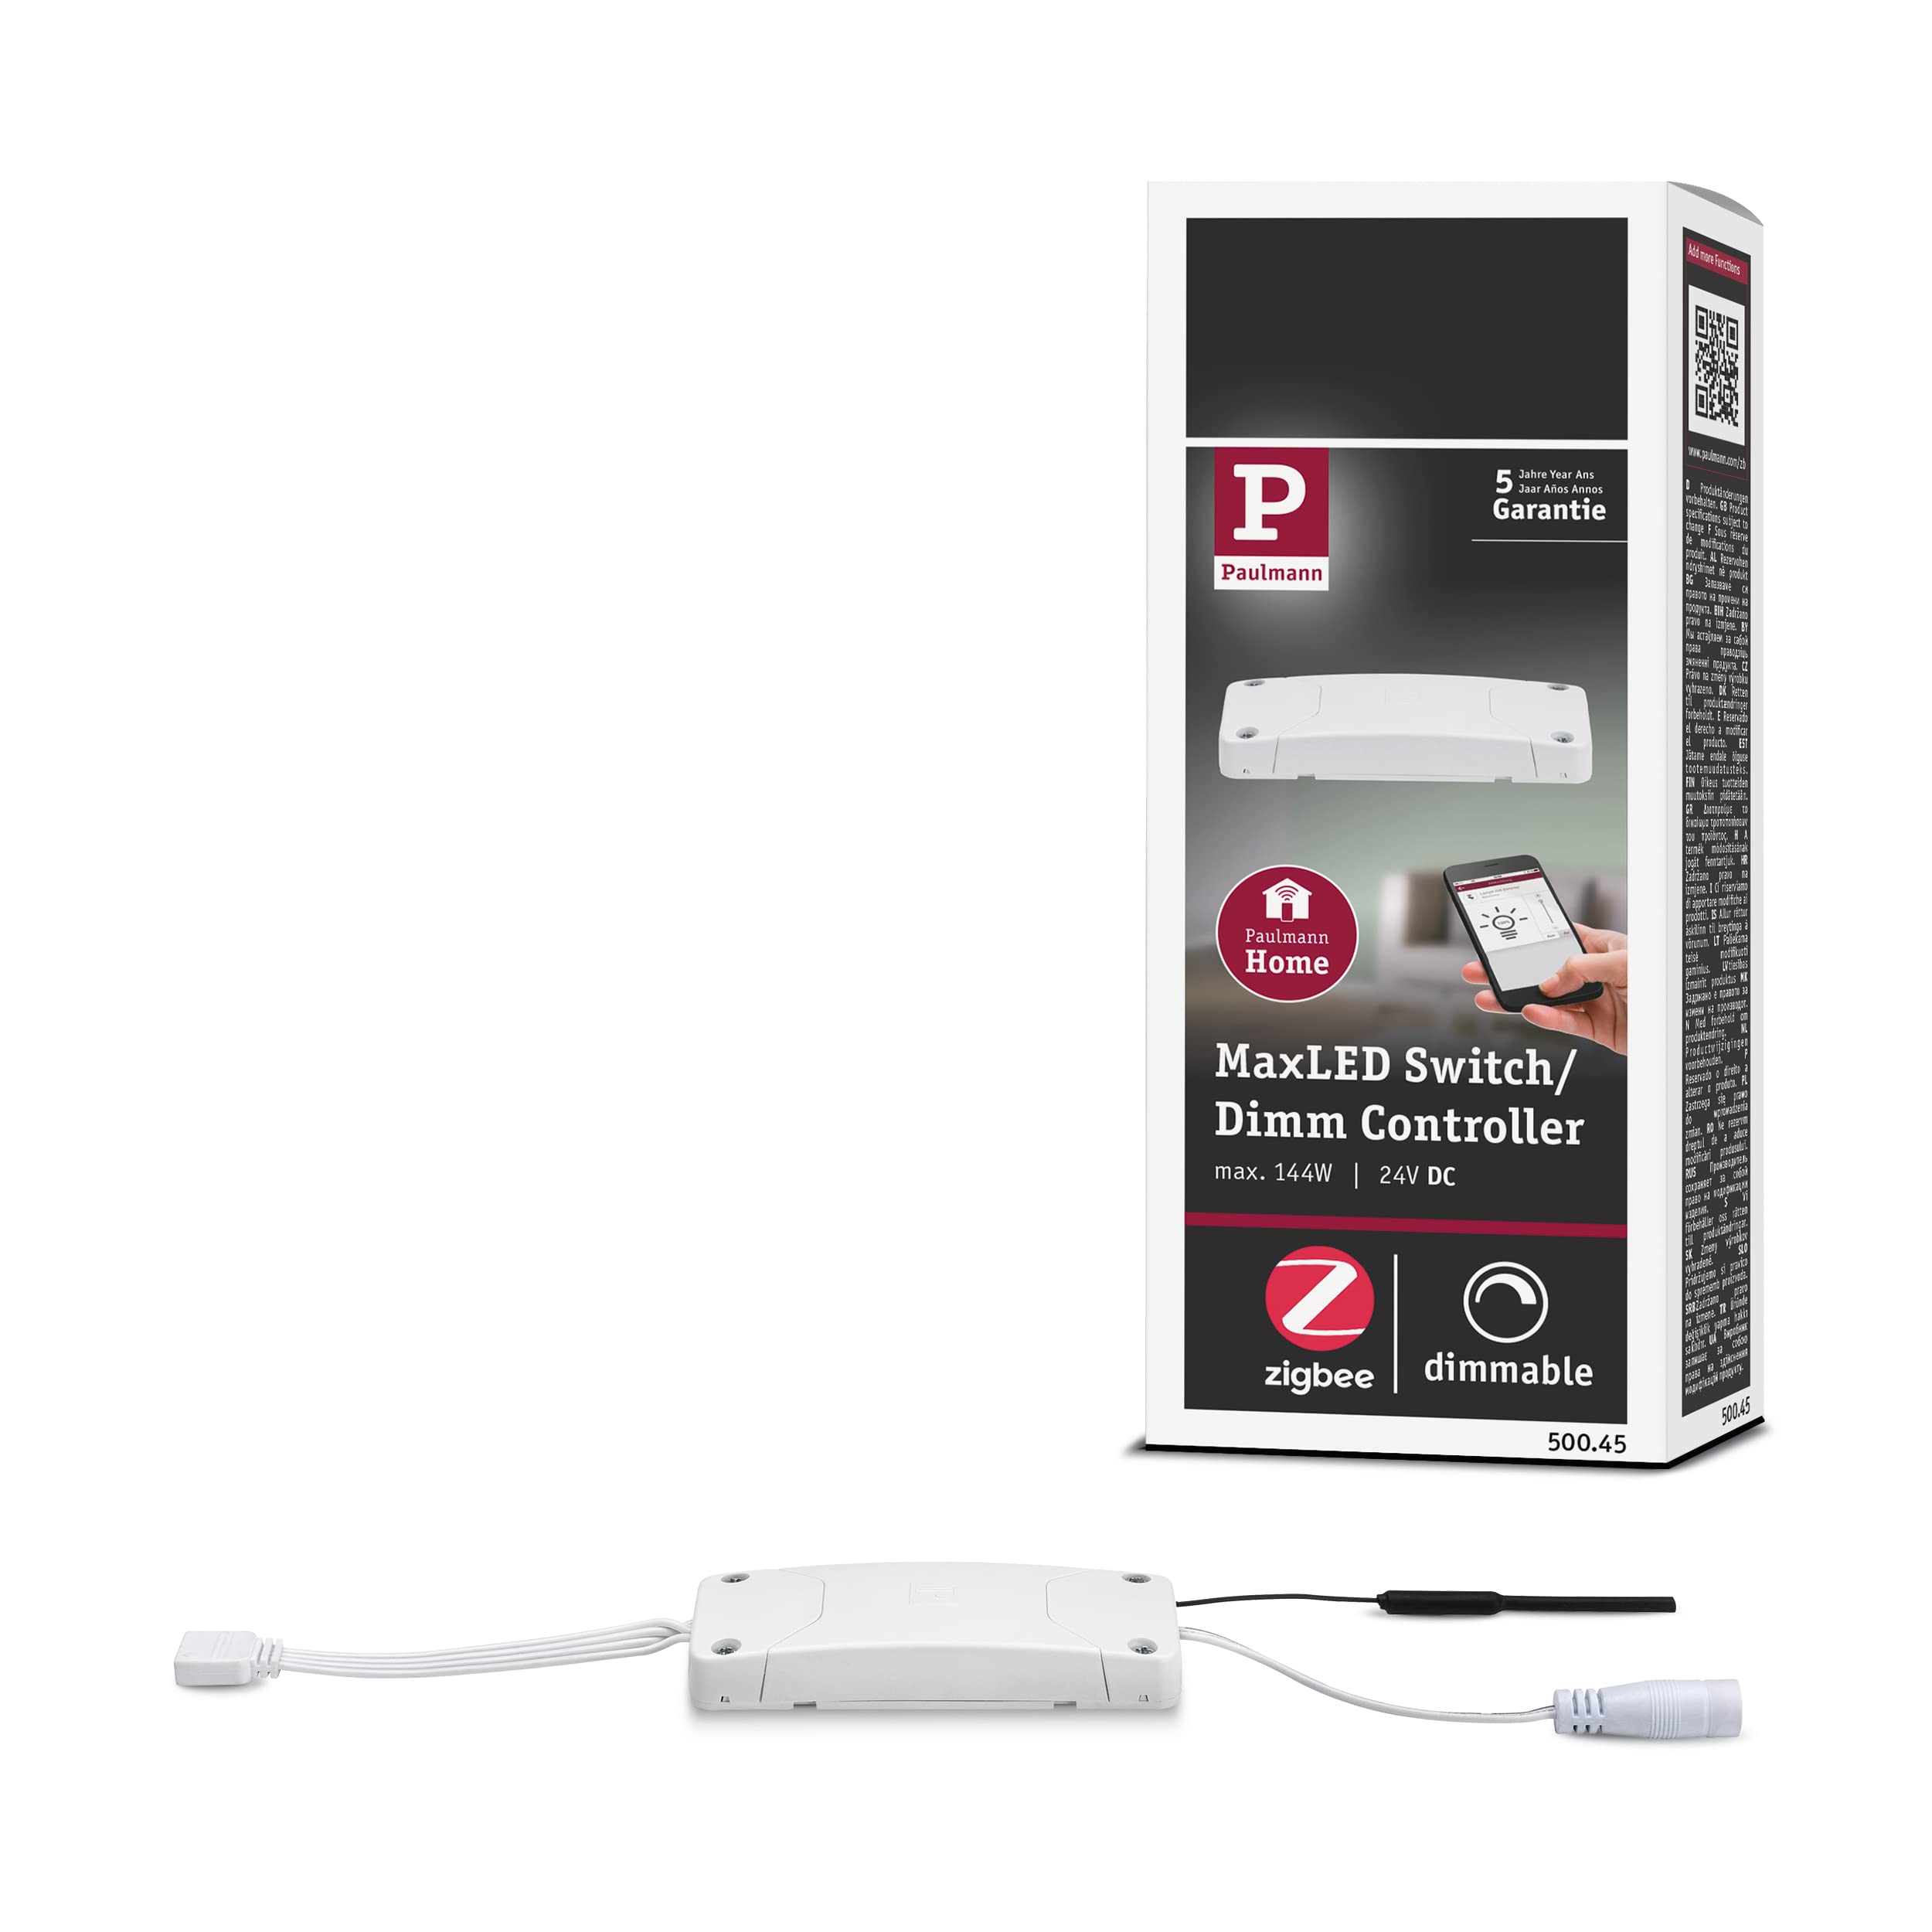 Paulmann 500.45 Smart Home Zigbee Maxled Schalt/Dimm Controller, Kunststoff, max. 144W 24V DC Schaltgerät 50045 - Amazon Echo Plus kompatibel, 3.8 x 9.5 x 1.8 cm